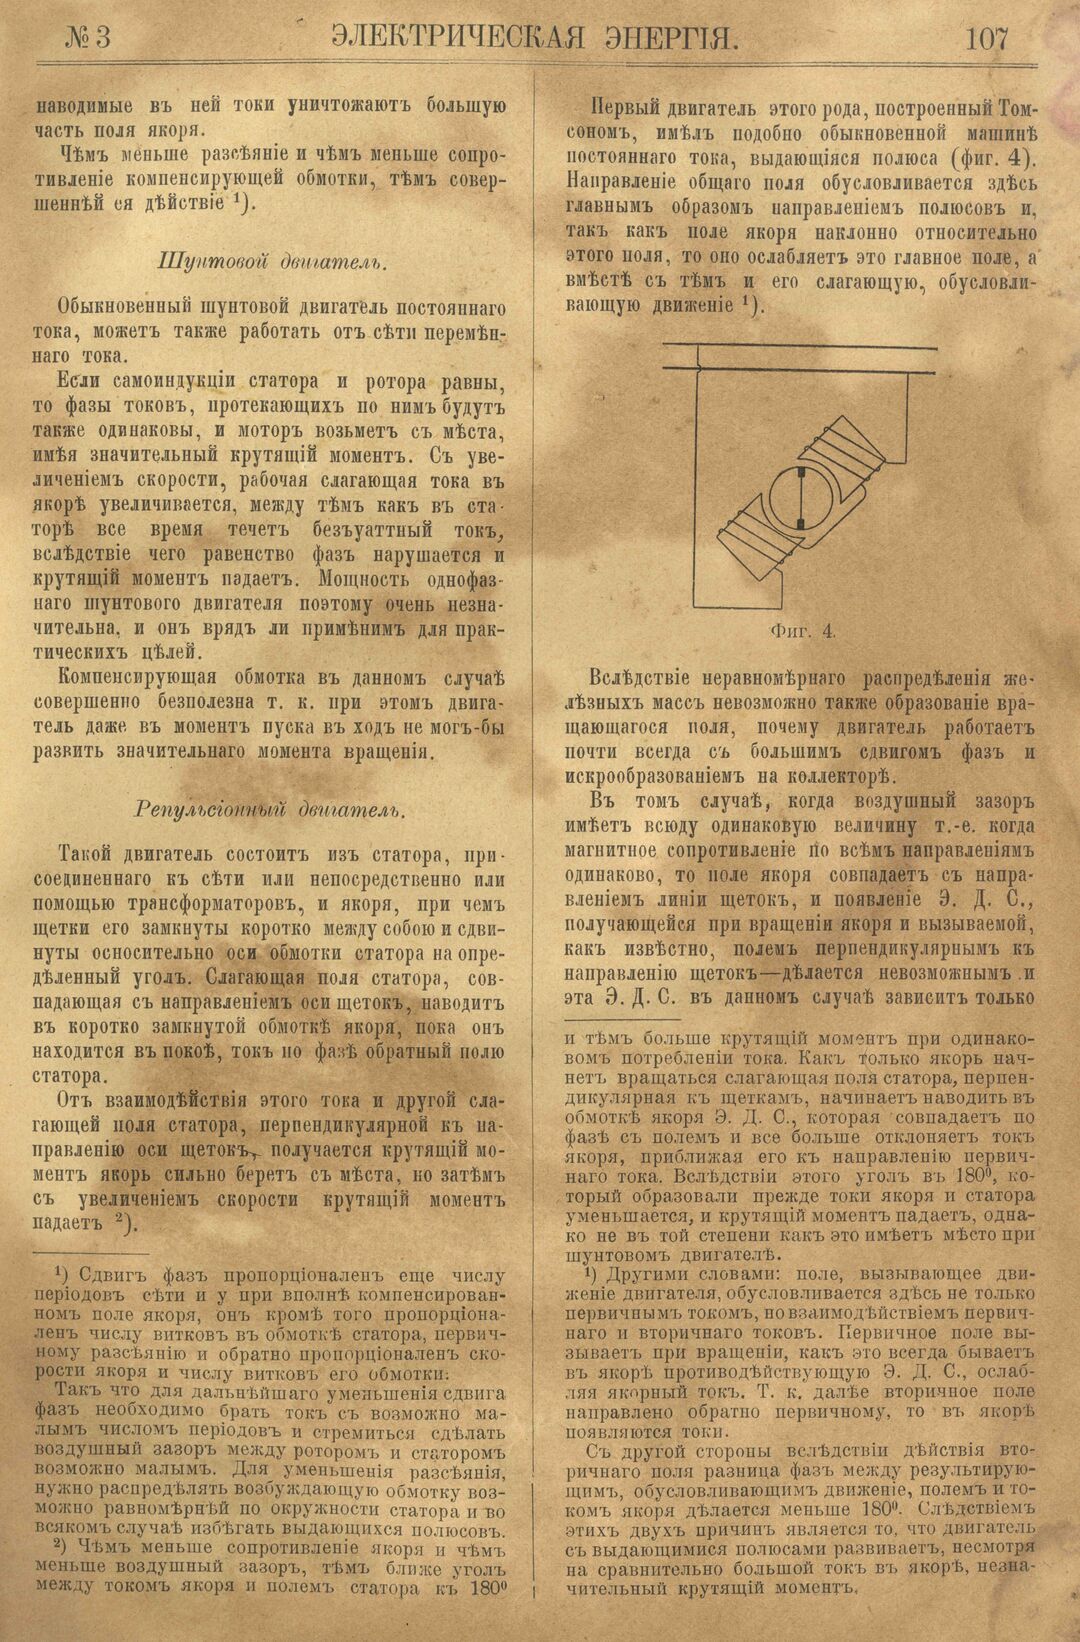 Рис. 1. Журнал Электрическая Энергiя, 3 номер, март, 1904 года, страница 107